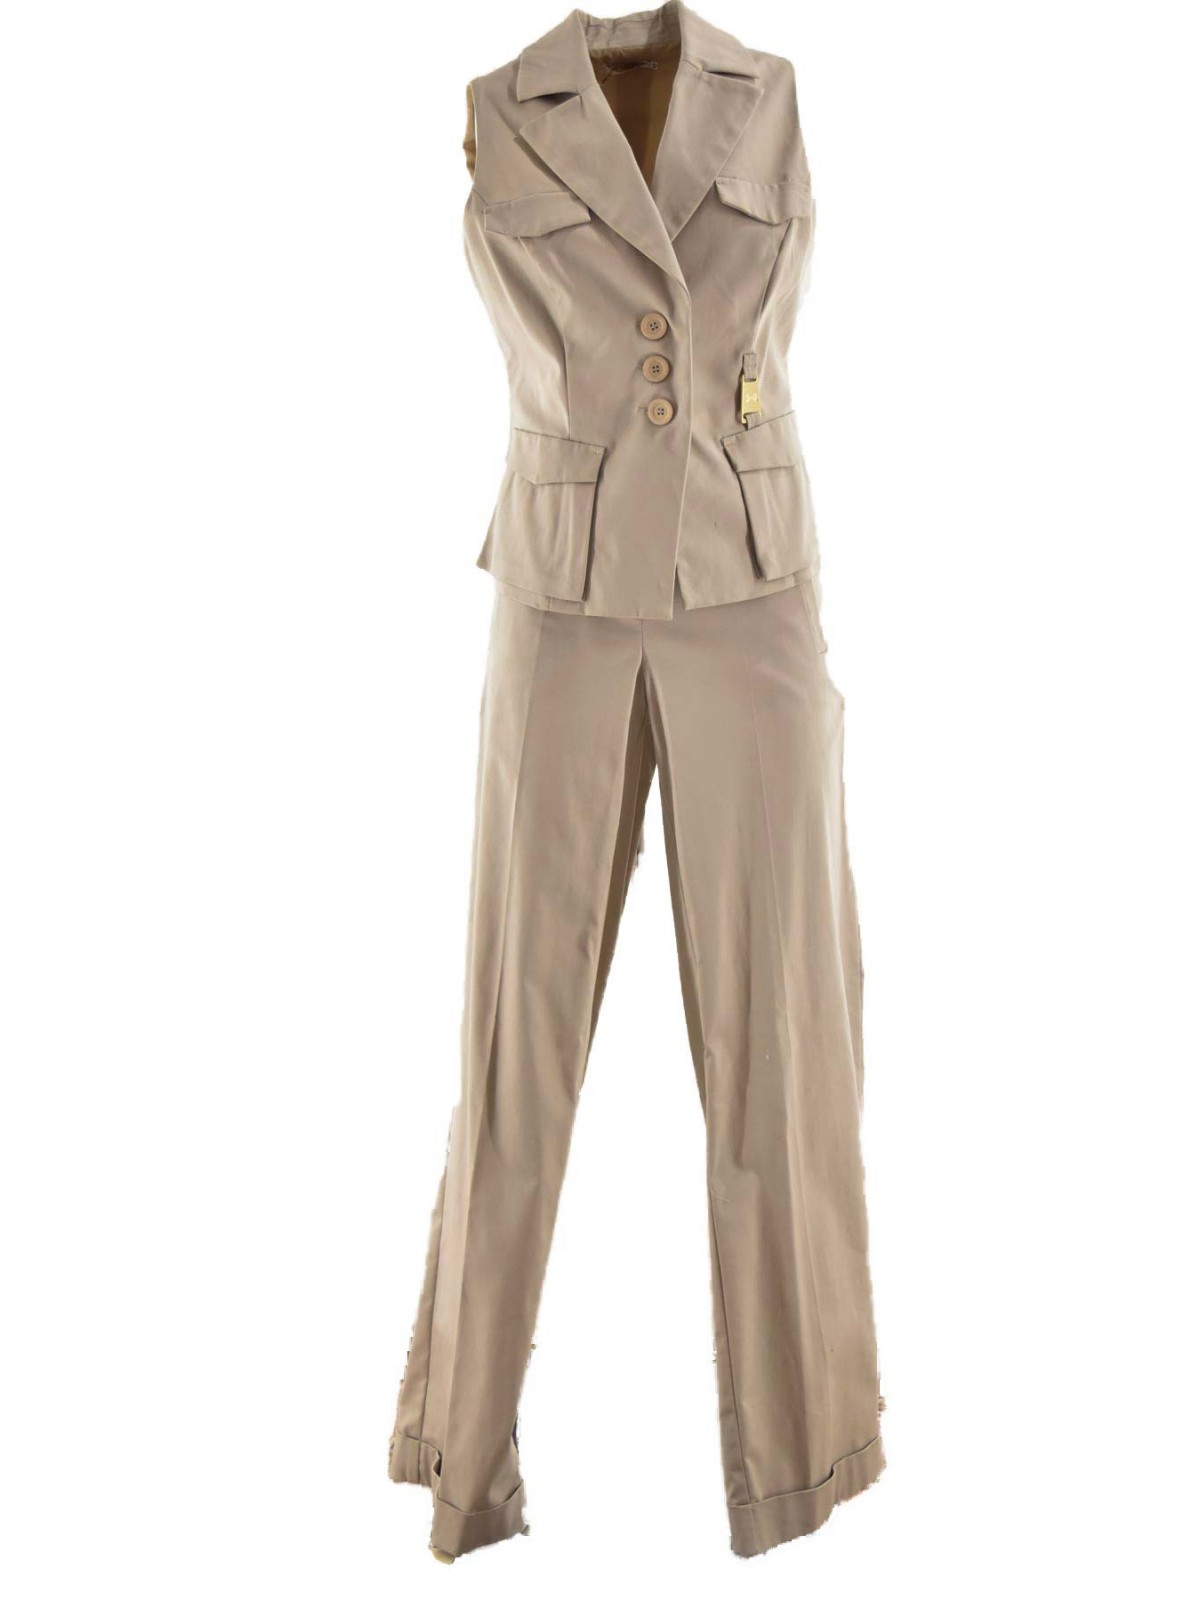 Suit Vest Pants Woman Light Beige Cotton 42